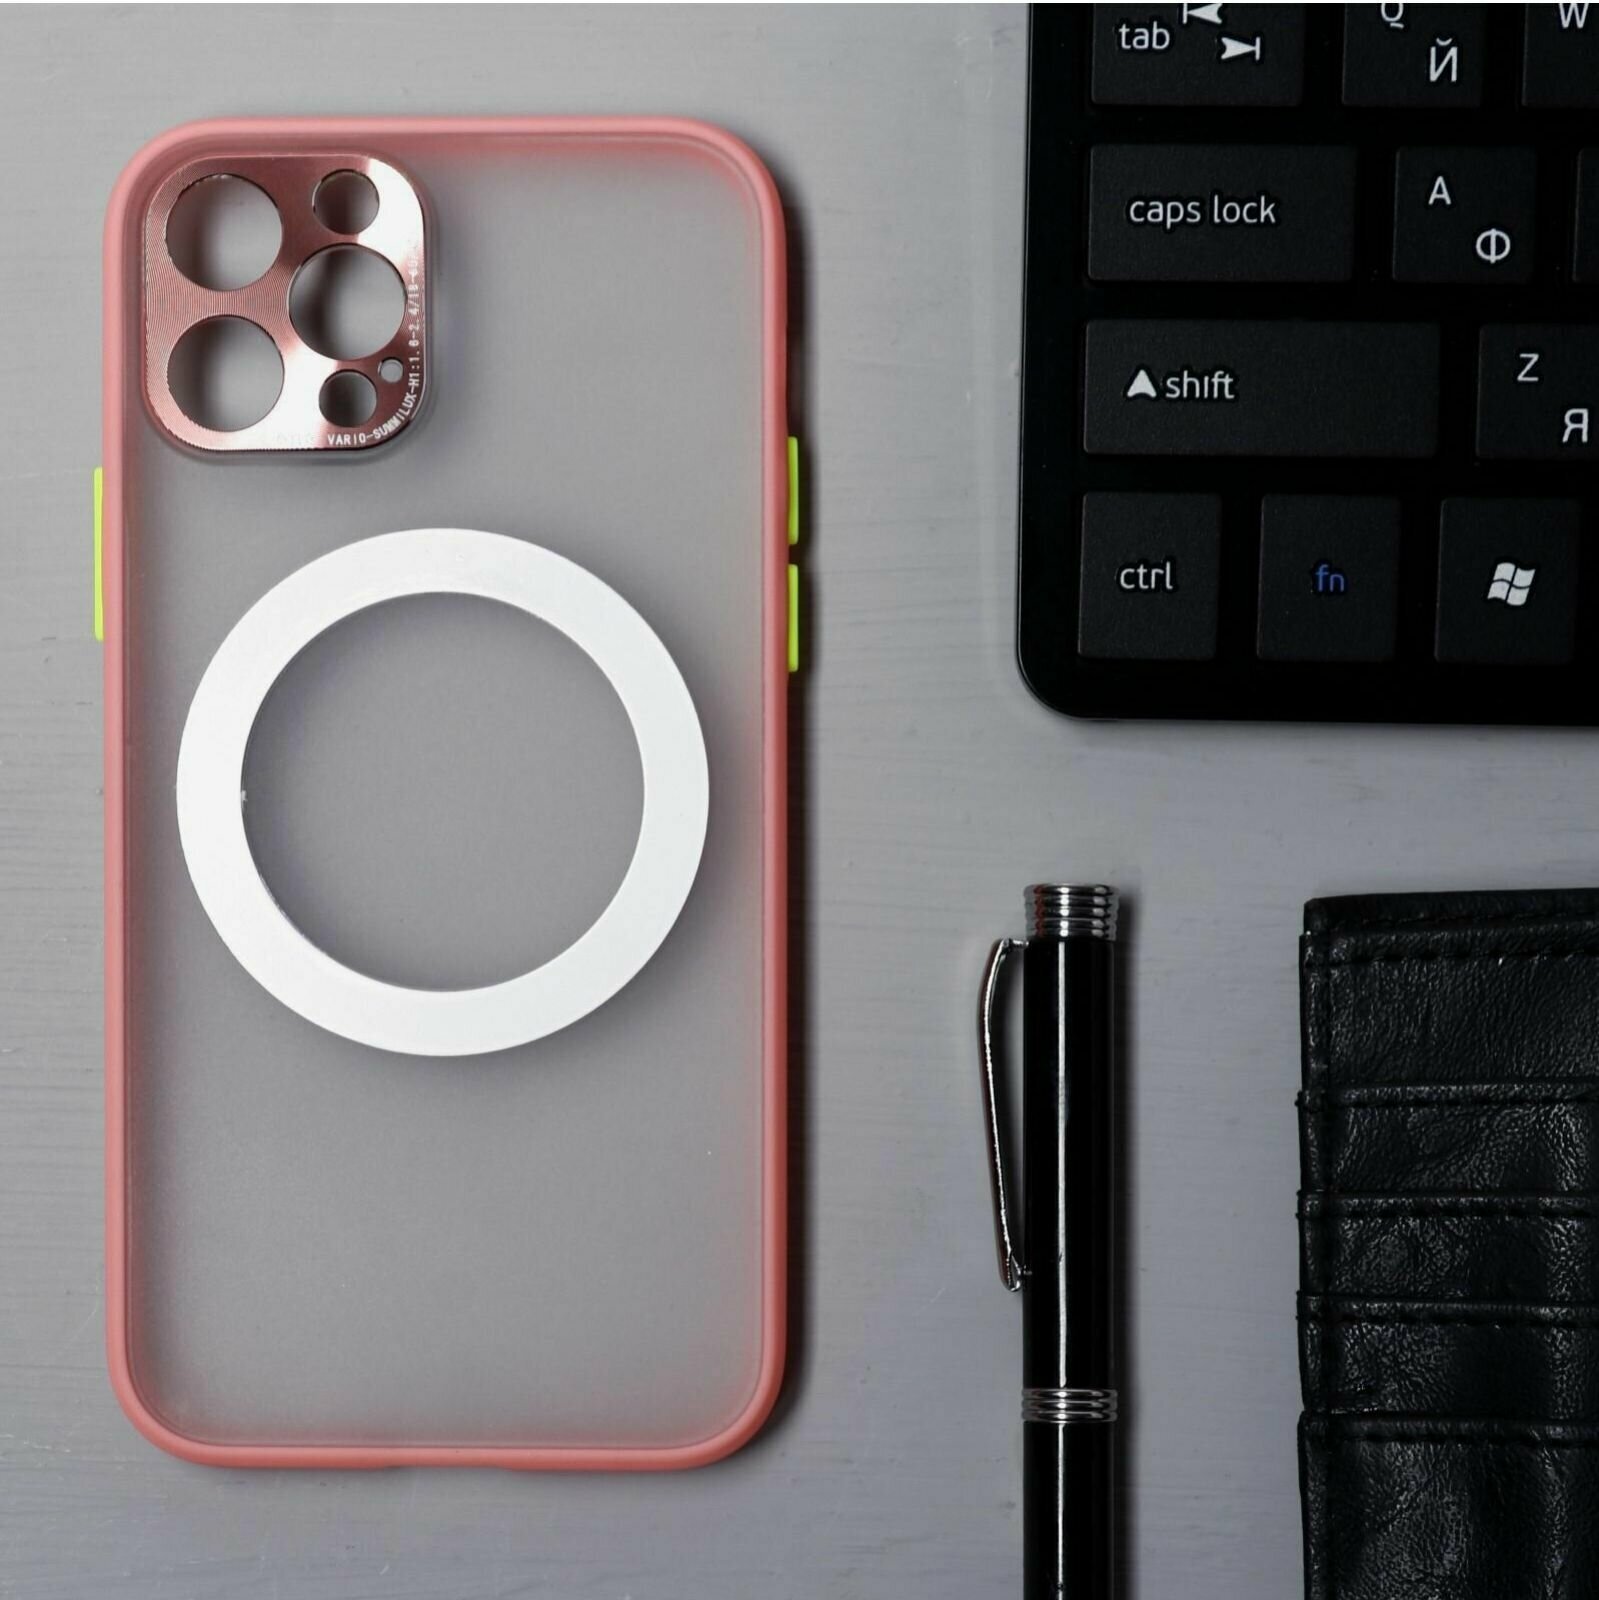 Чехол LuazON для iPhone 12 Pro, поддержка MagSafe, с окантовкой, пластиковый, розовый